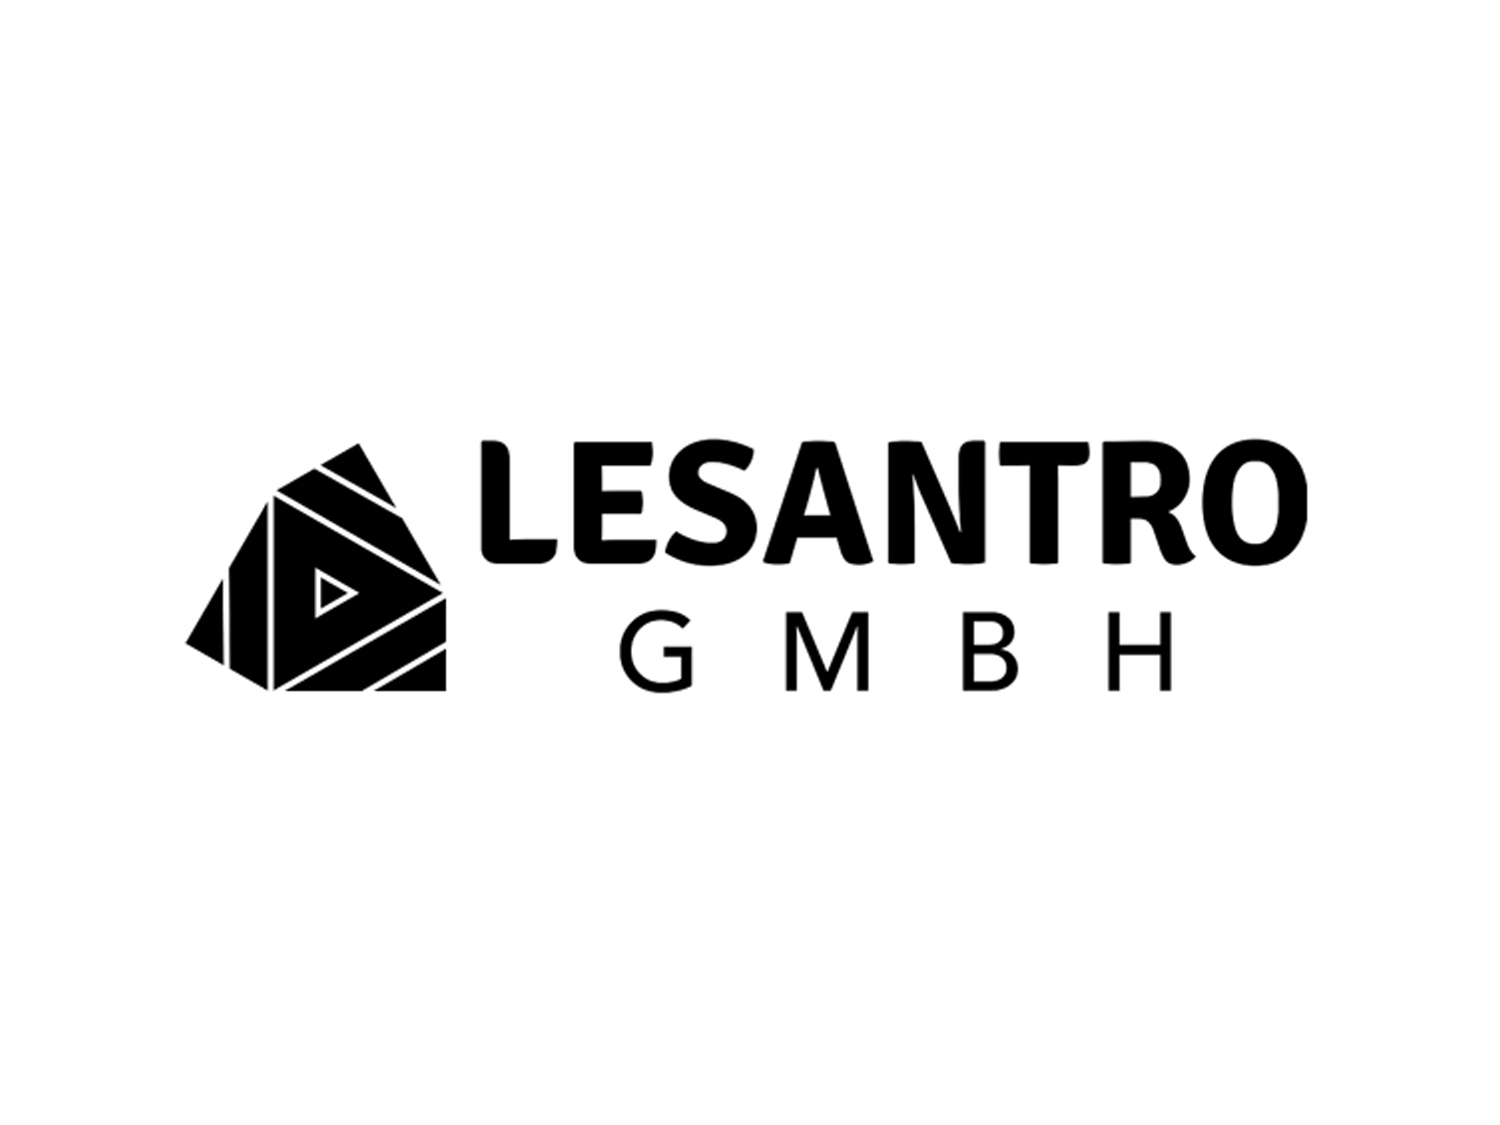 Lesantro GmbH